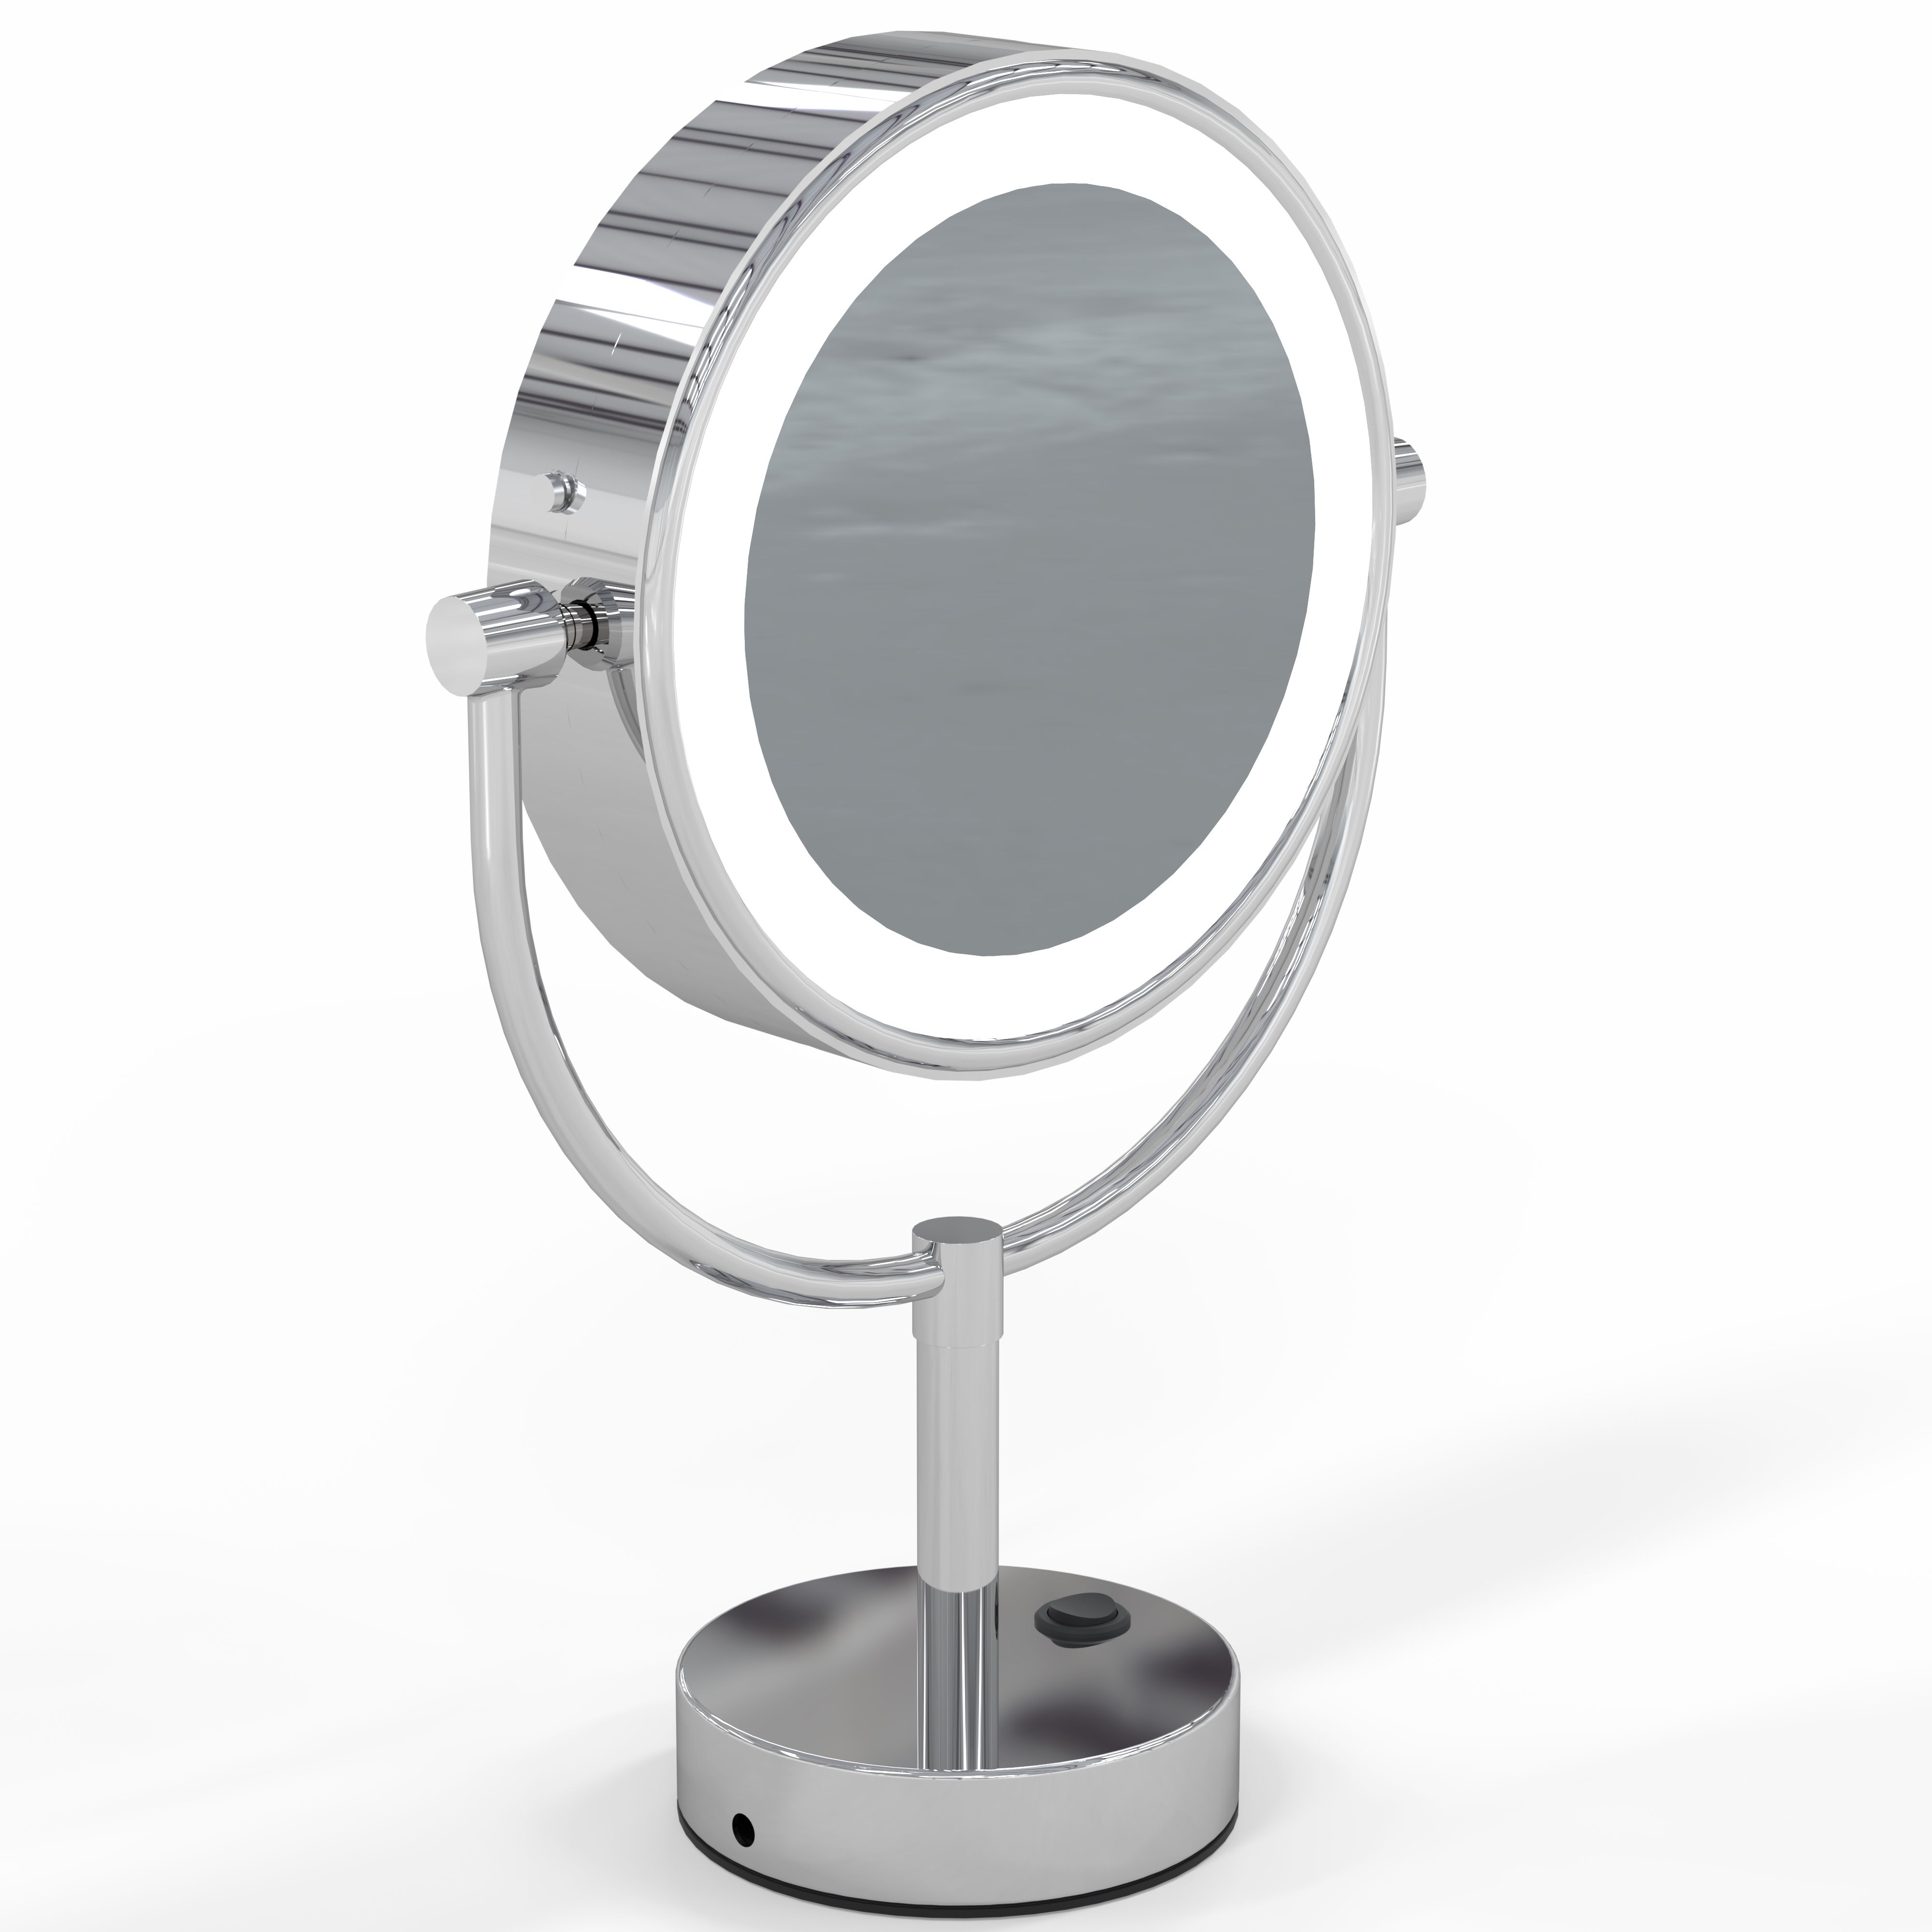 Aptations 745-35-45 Neomodern Led Lighted Freestanding Mirror, Chrome - 3500k